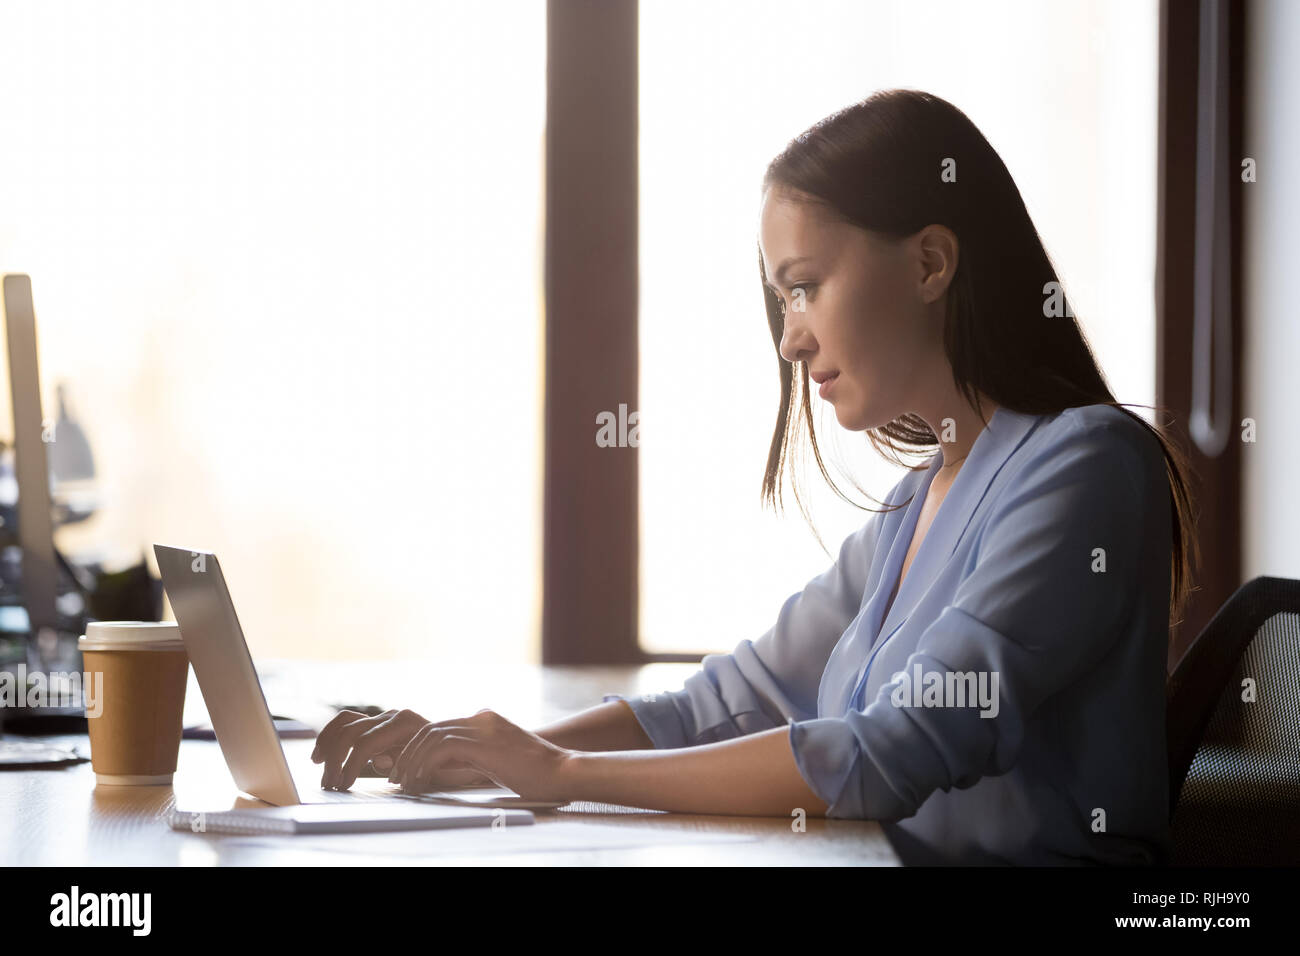 Les femmes ciblées s'asseoir à l'aide de bureau ordinateur portable Banque D'Images